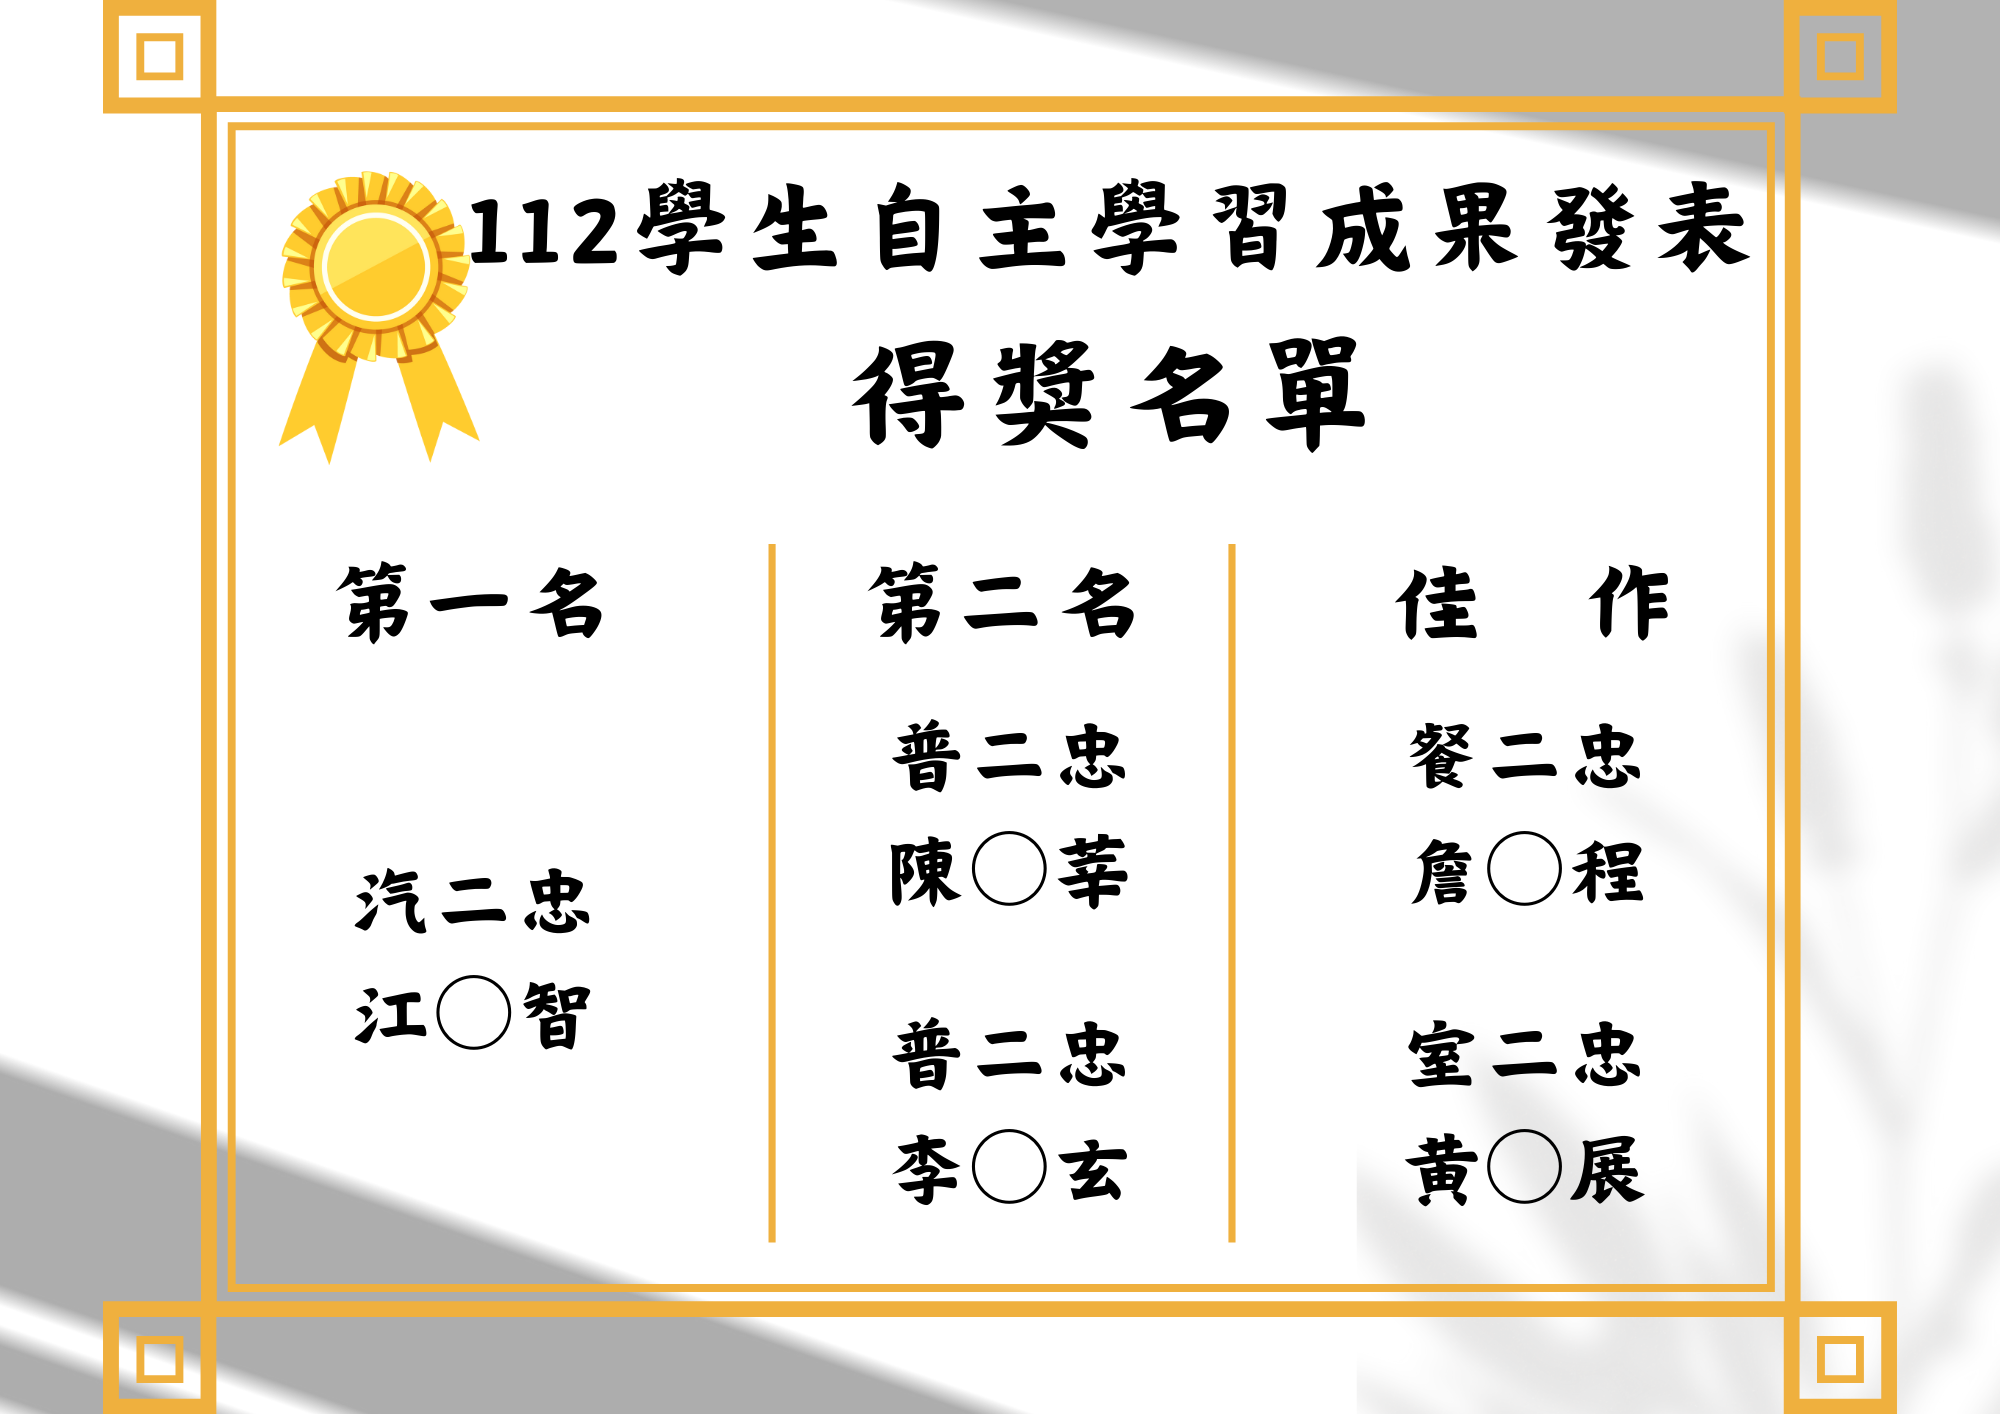 112-1自主學習成果發表得獎名單